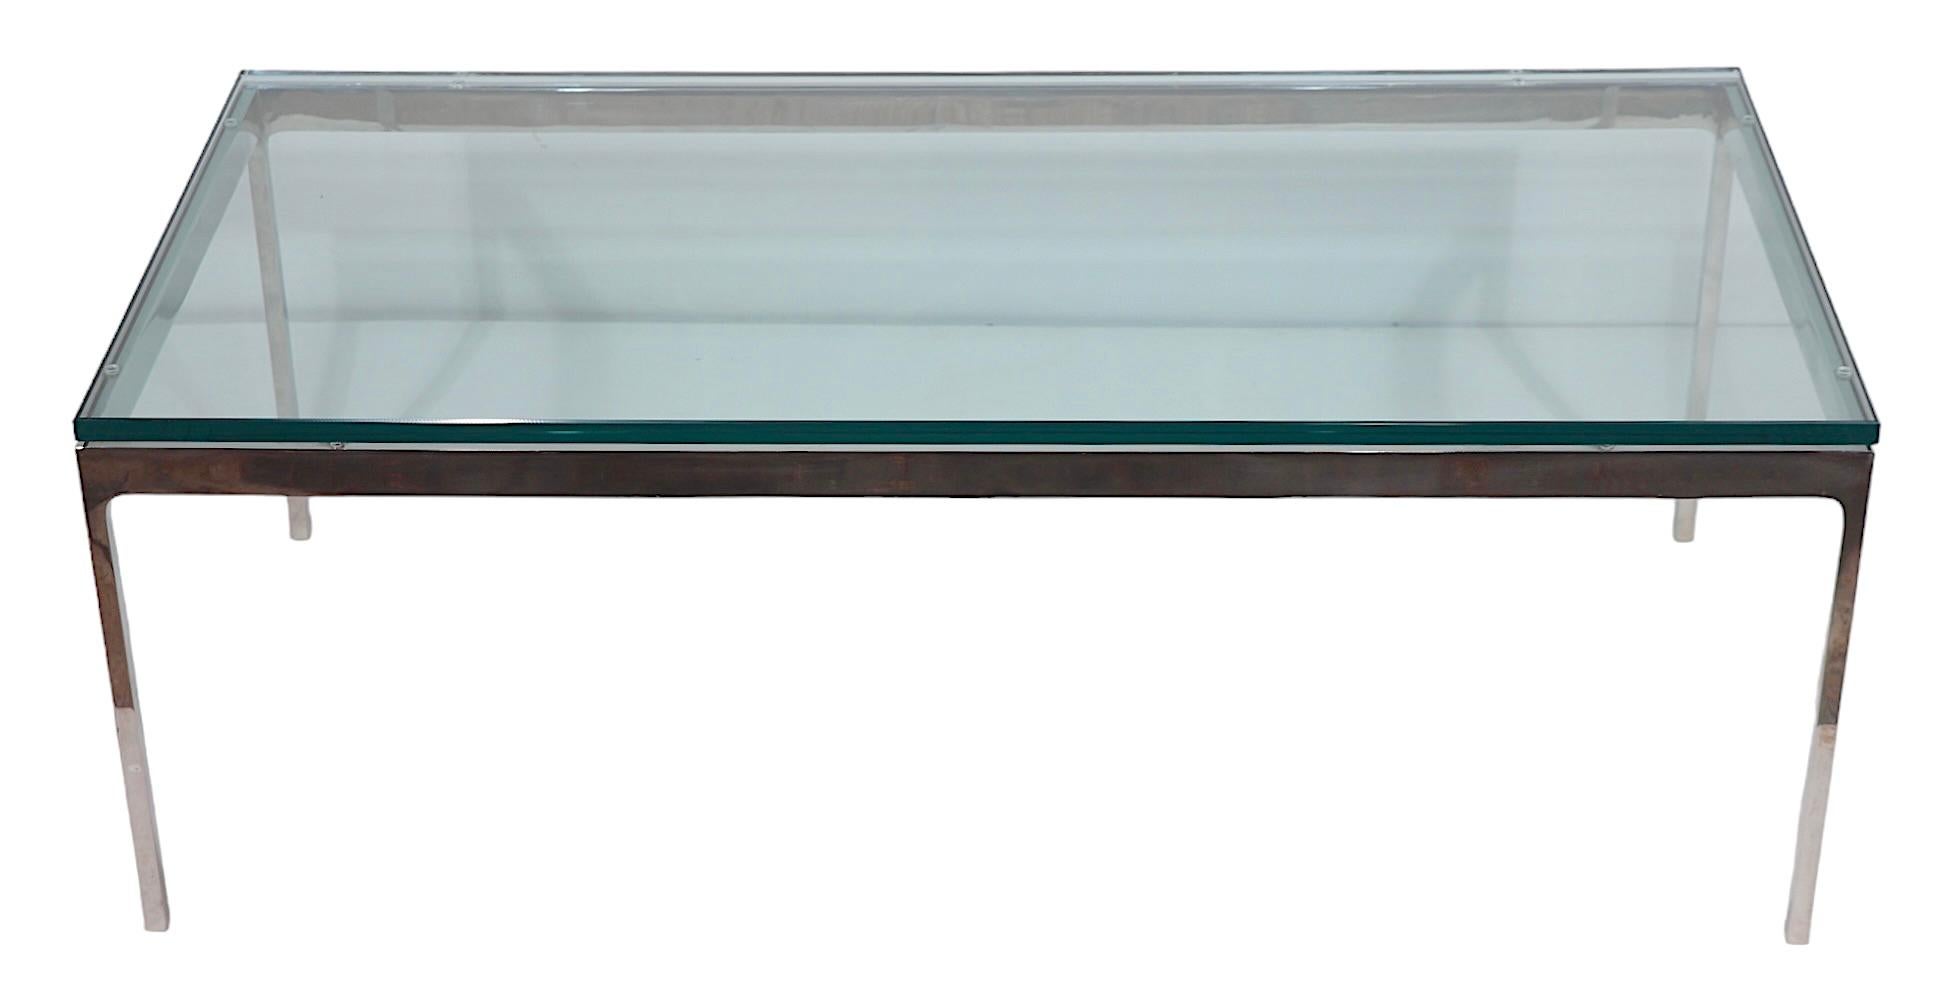 Exceptionnelle table basse internationale de style Bauhaus conçue par Nicos Zographos vers les années 1970. De son groupe emblématique de la série 35, il s'agit de la version rectangulaire, peu fréquente, en très bel état, propre et prête à